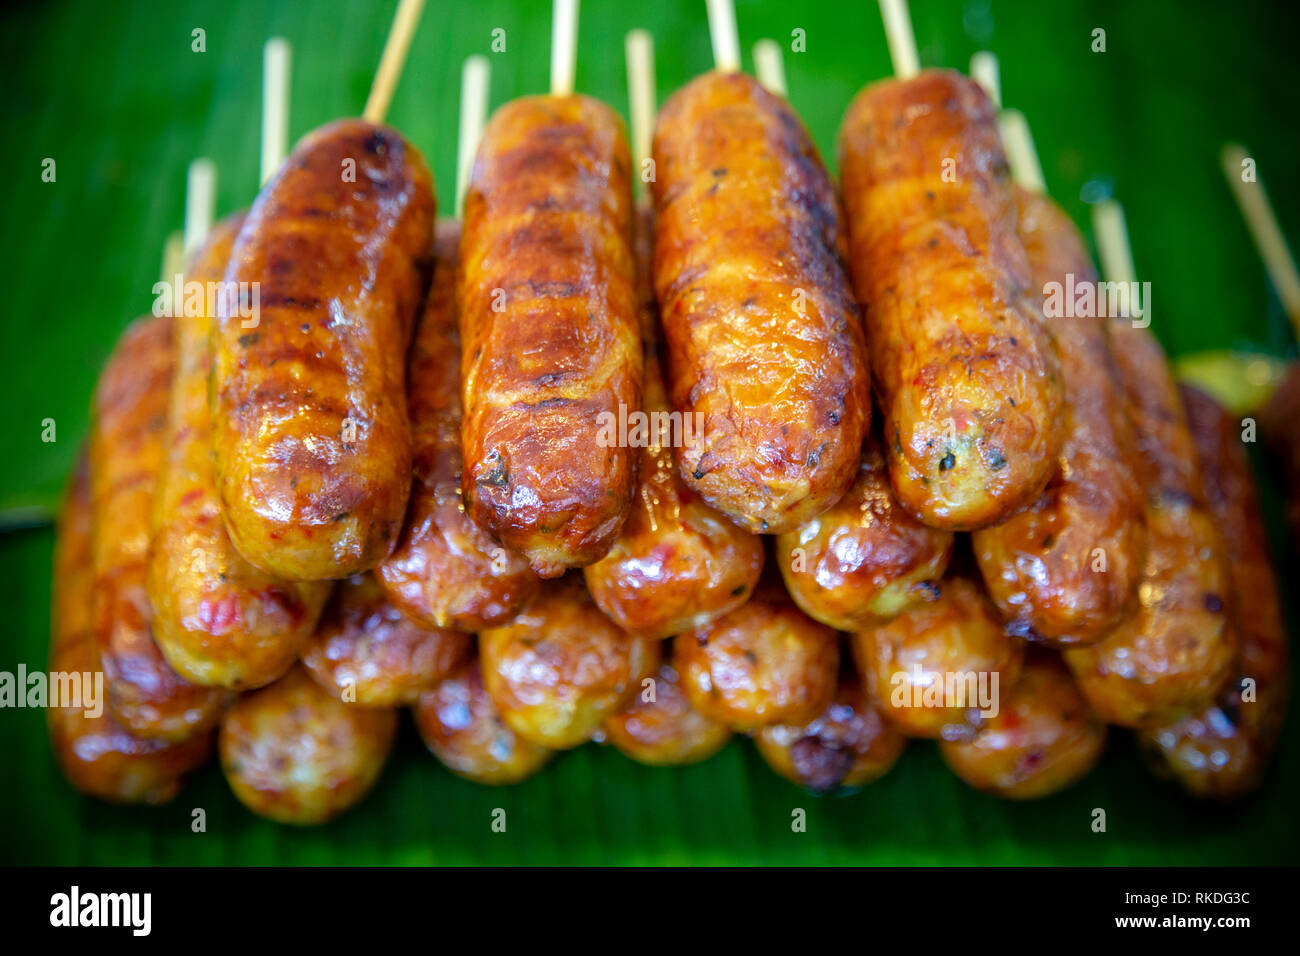 Sai ua ou saucisse ou du nord de la Thaïlande Chiang Mai est une saucisse saucisse de porc grillé au nord de la Thaïlande et du nord-est de la Birmanie. Sai ua contient émincées Banque D'Images